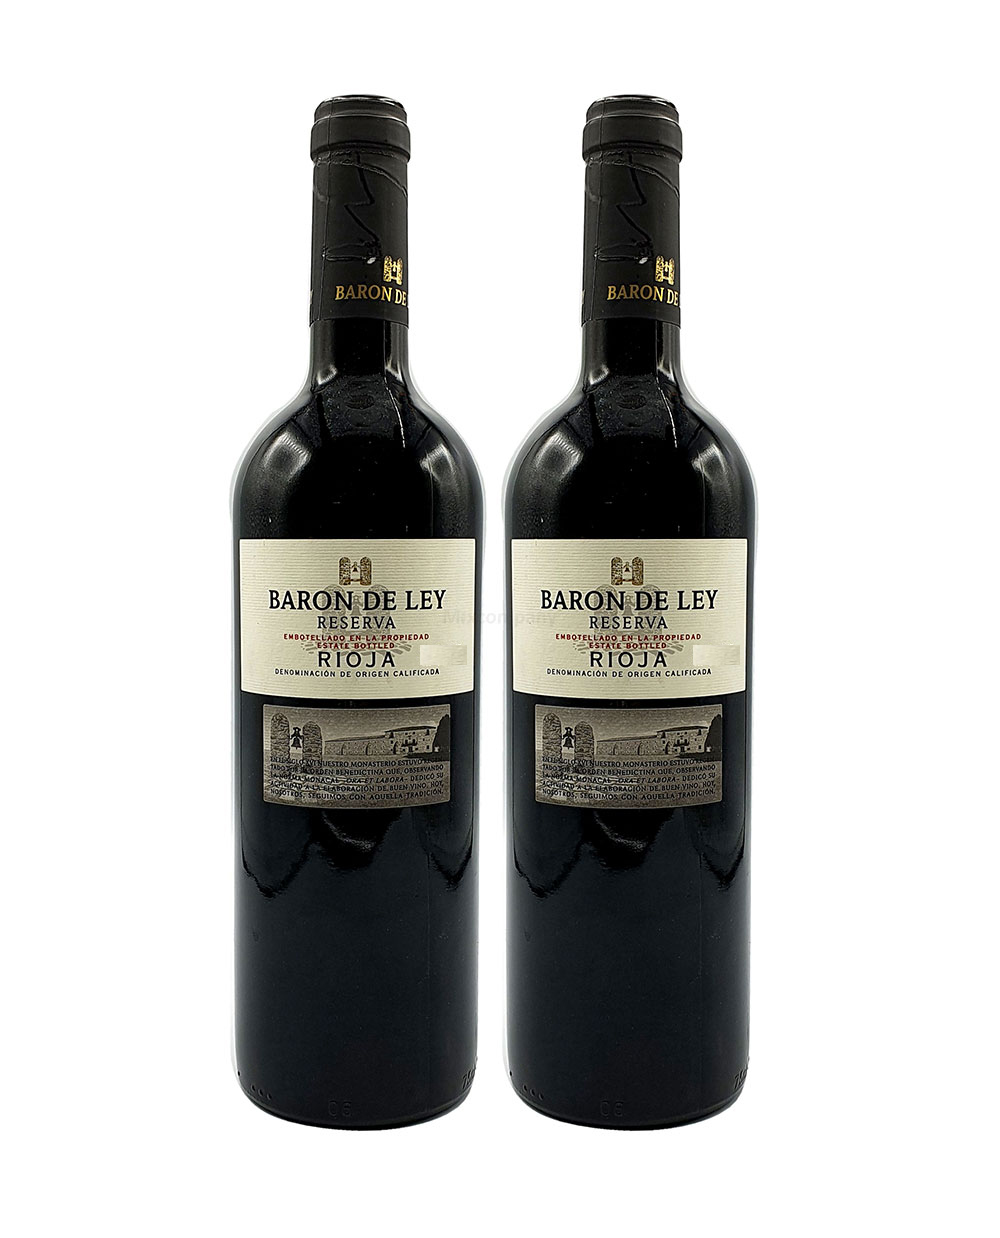 Baron de Ley Rotwein - 2er Set - 2x 0,75L (14% Vol) - Reserva Rioja - Spanien- [Enthält Sulfite]